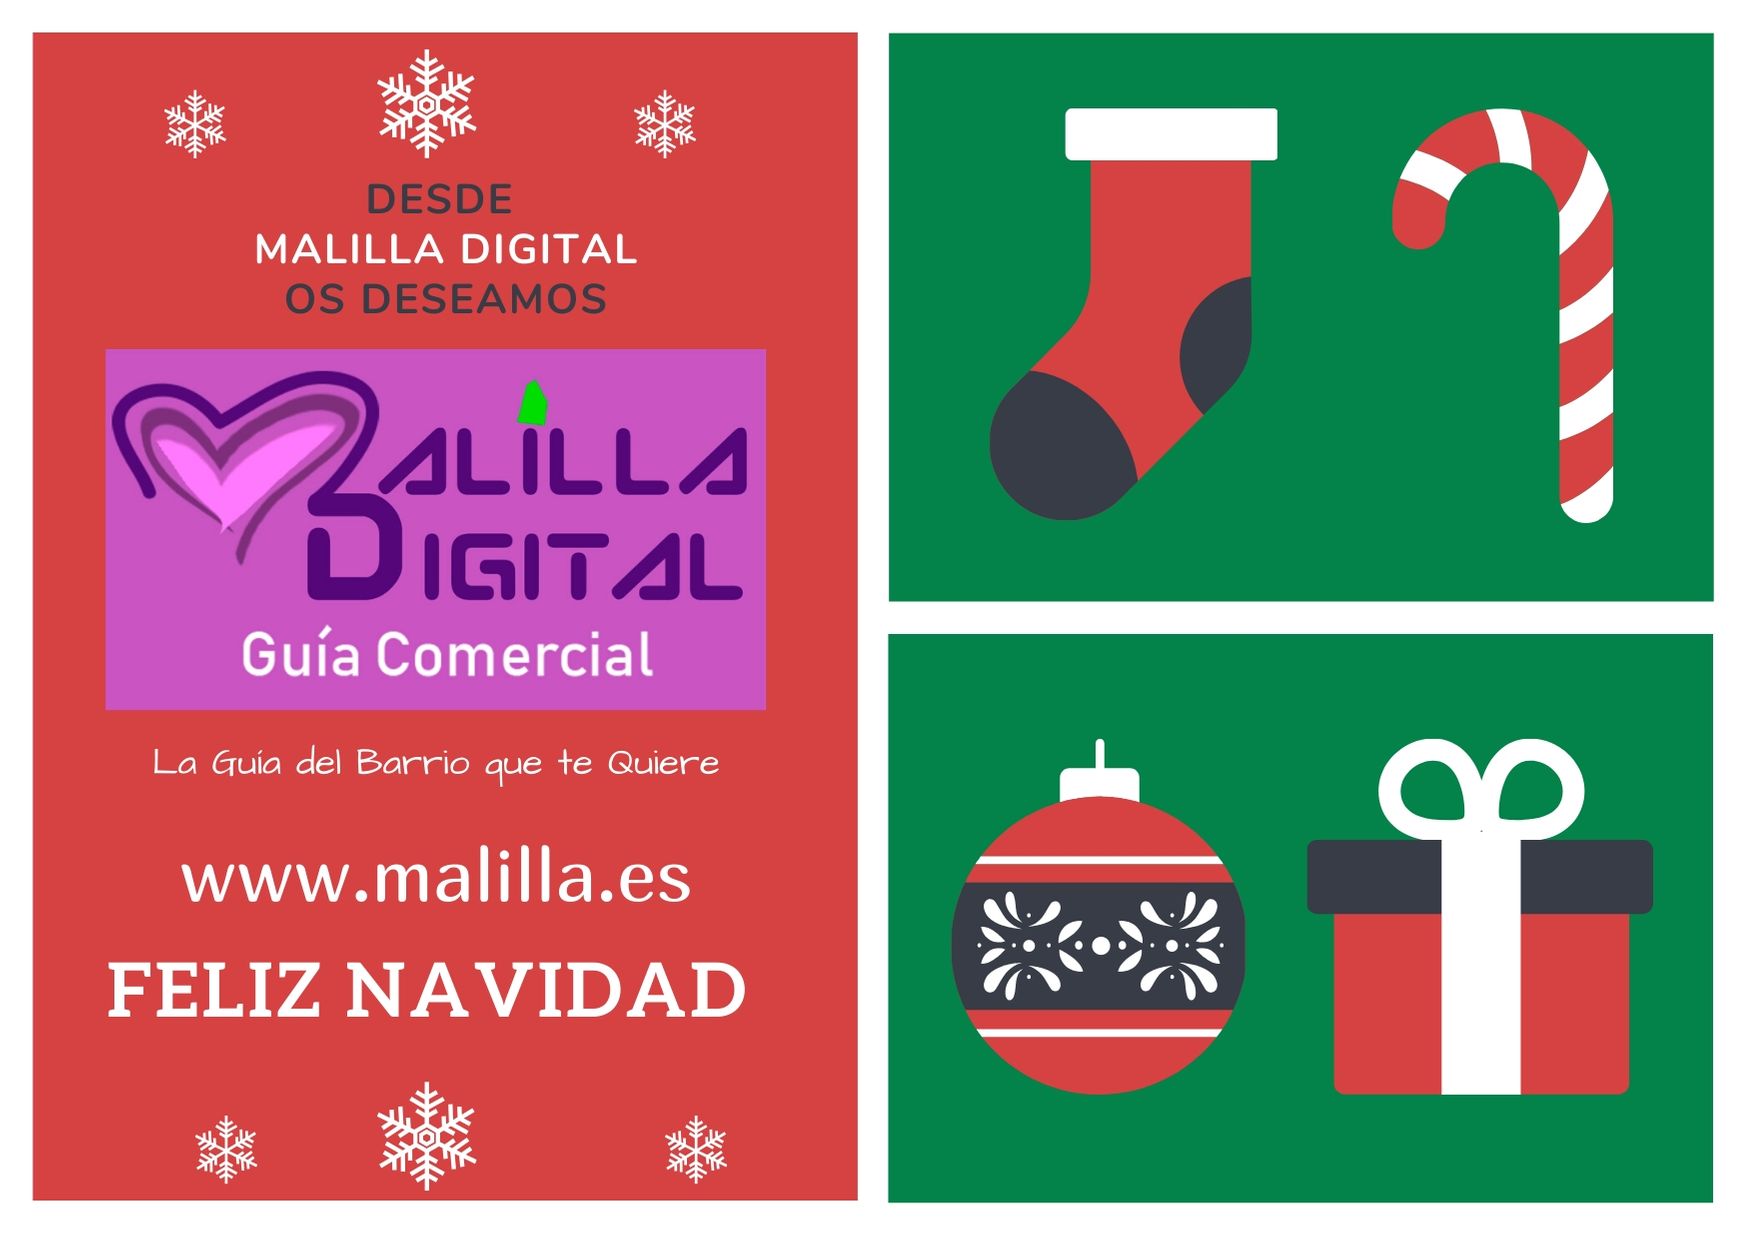 ¡Malilla Digital os desea Felices Fiestas!